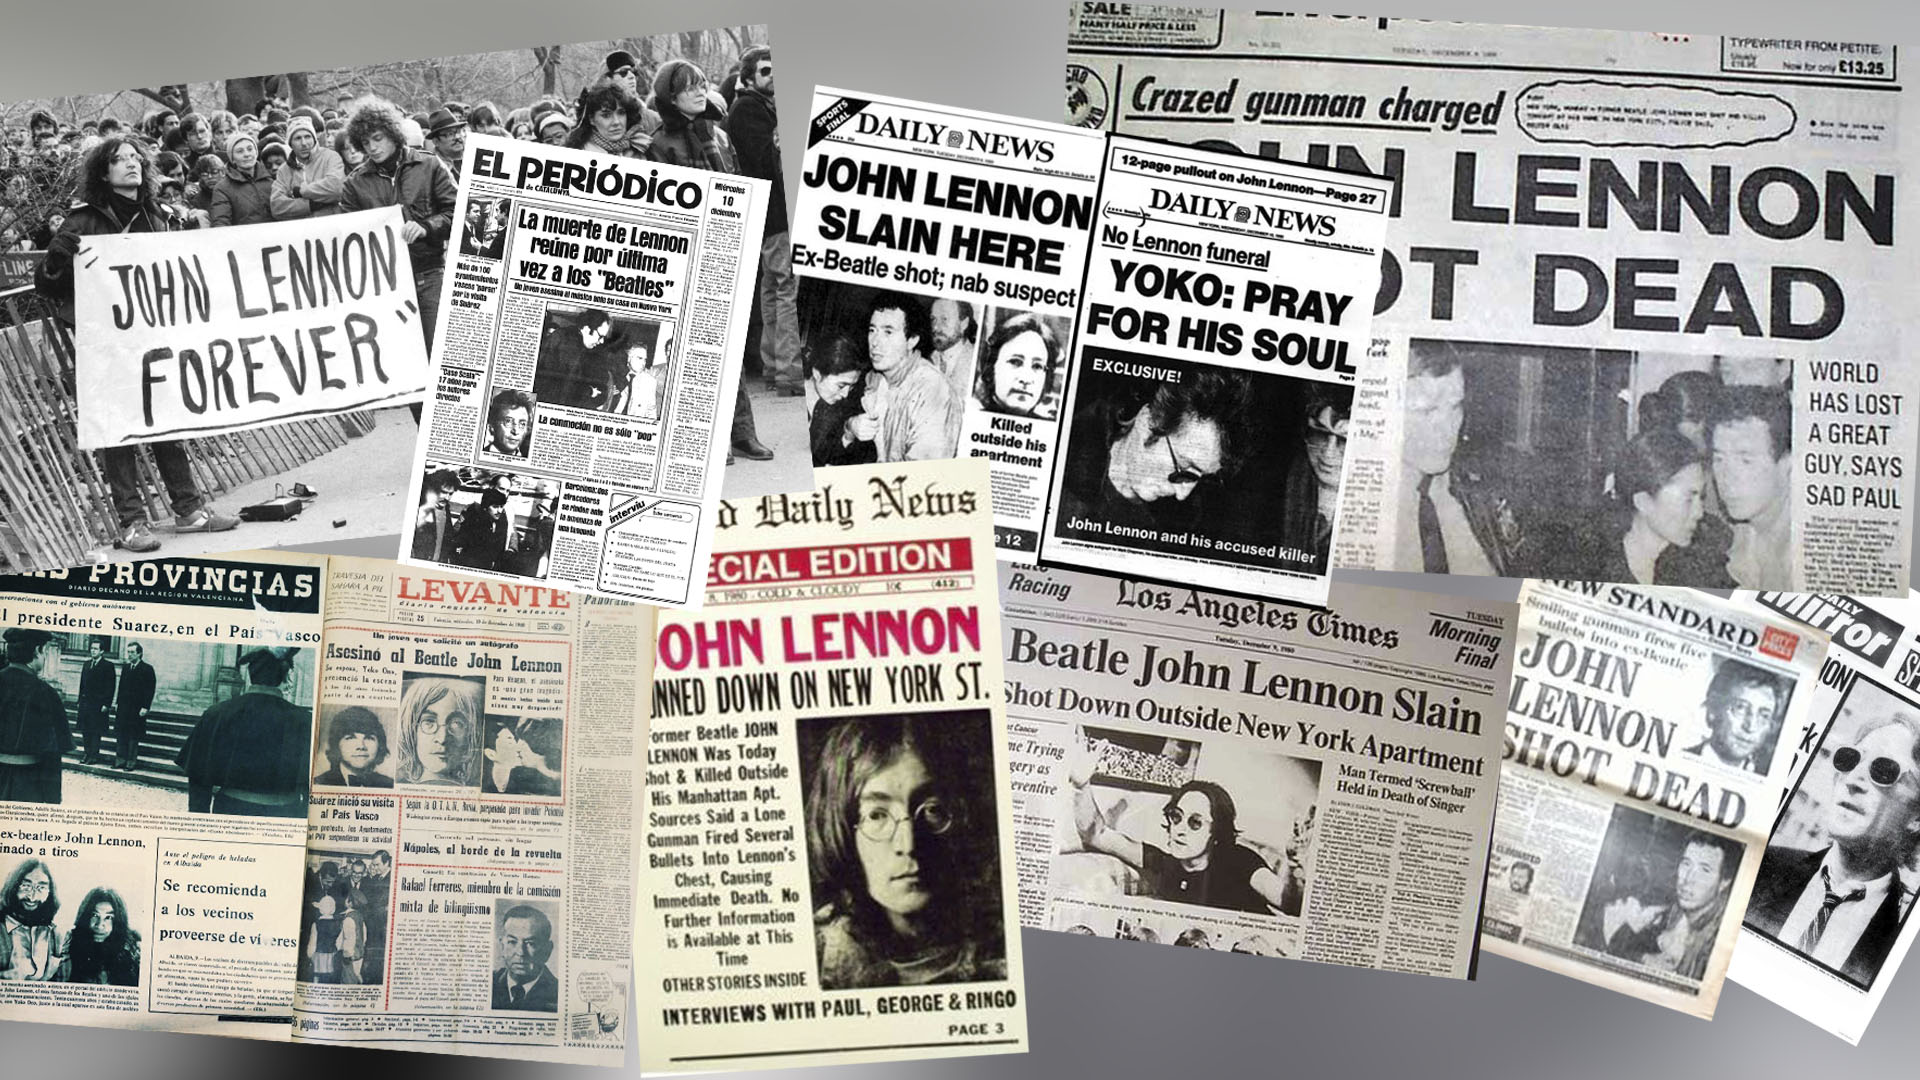 A las 22:48 del 8 de diciembre de 1980, cinco disparos fueron contra John Lennon. Cuatro de ellos perforaron el cuerpo del músico y reconocido activista por la paz durante la guerra de Vietnam. La noticia estuvo en, al menos, las tapas de 32 diarios.